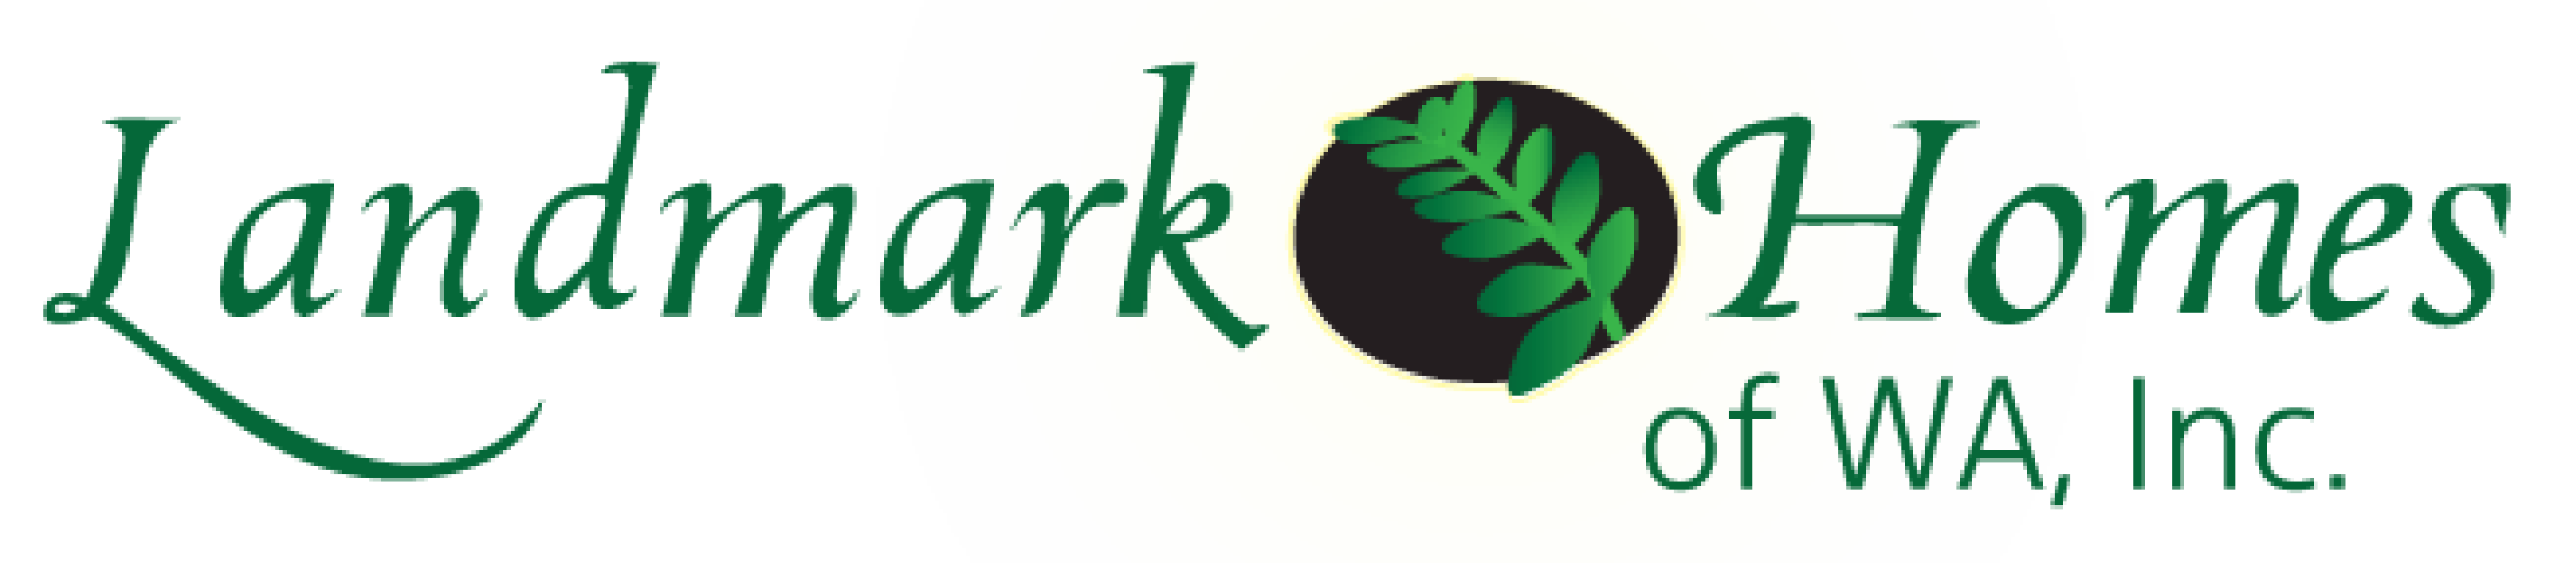 Landmark-green-logo-01